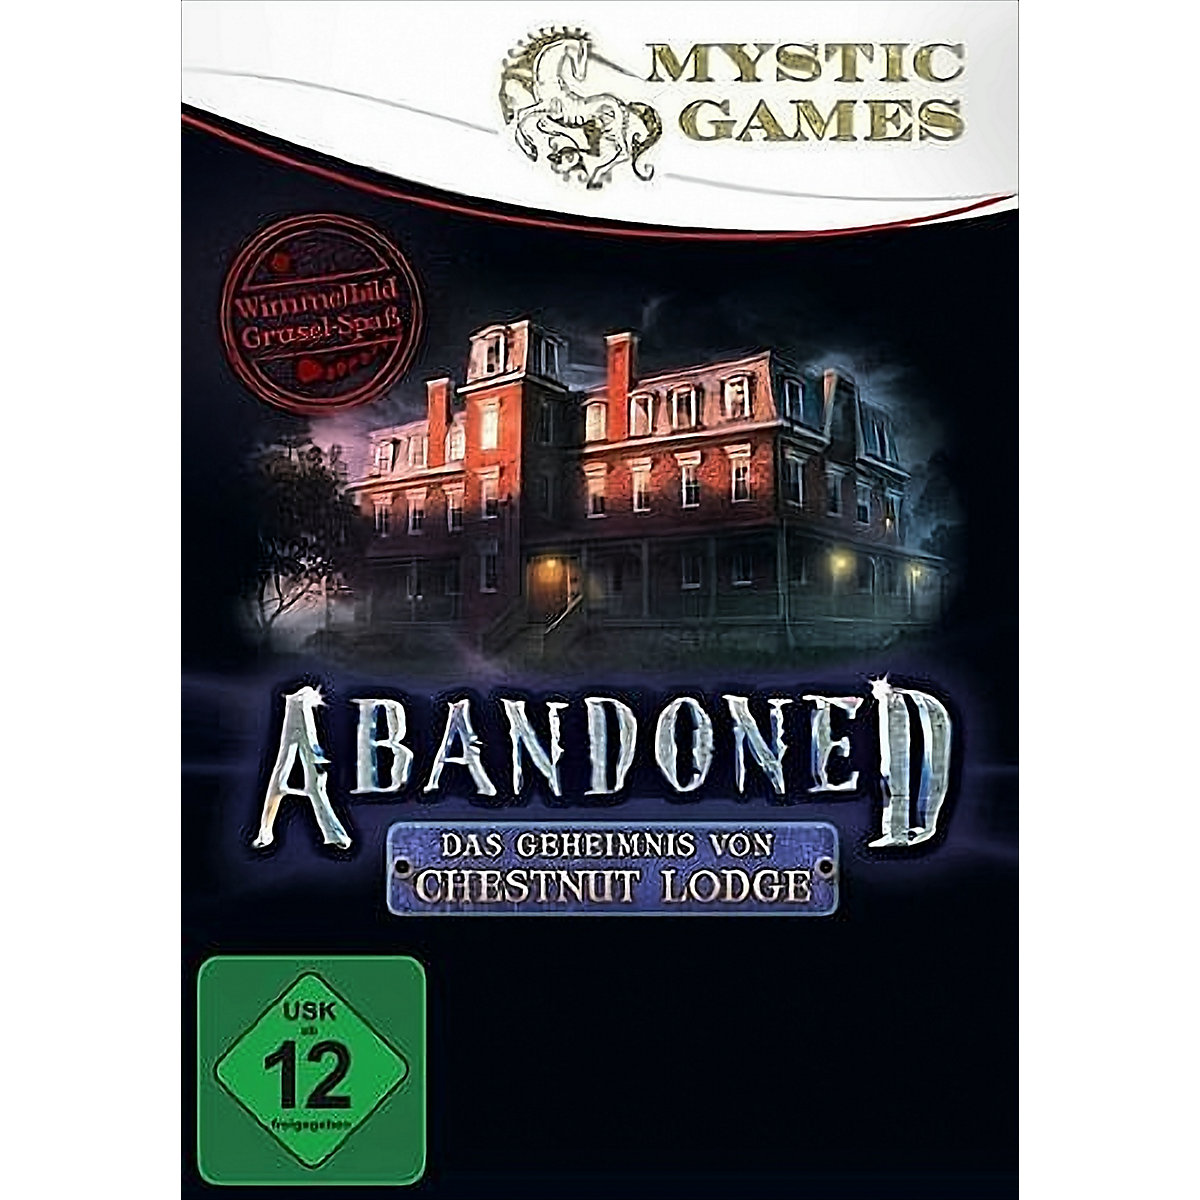 Abandoned: Chestnut Lodge Asylum